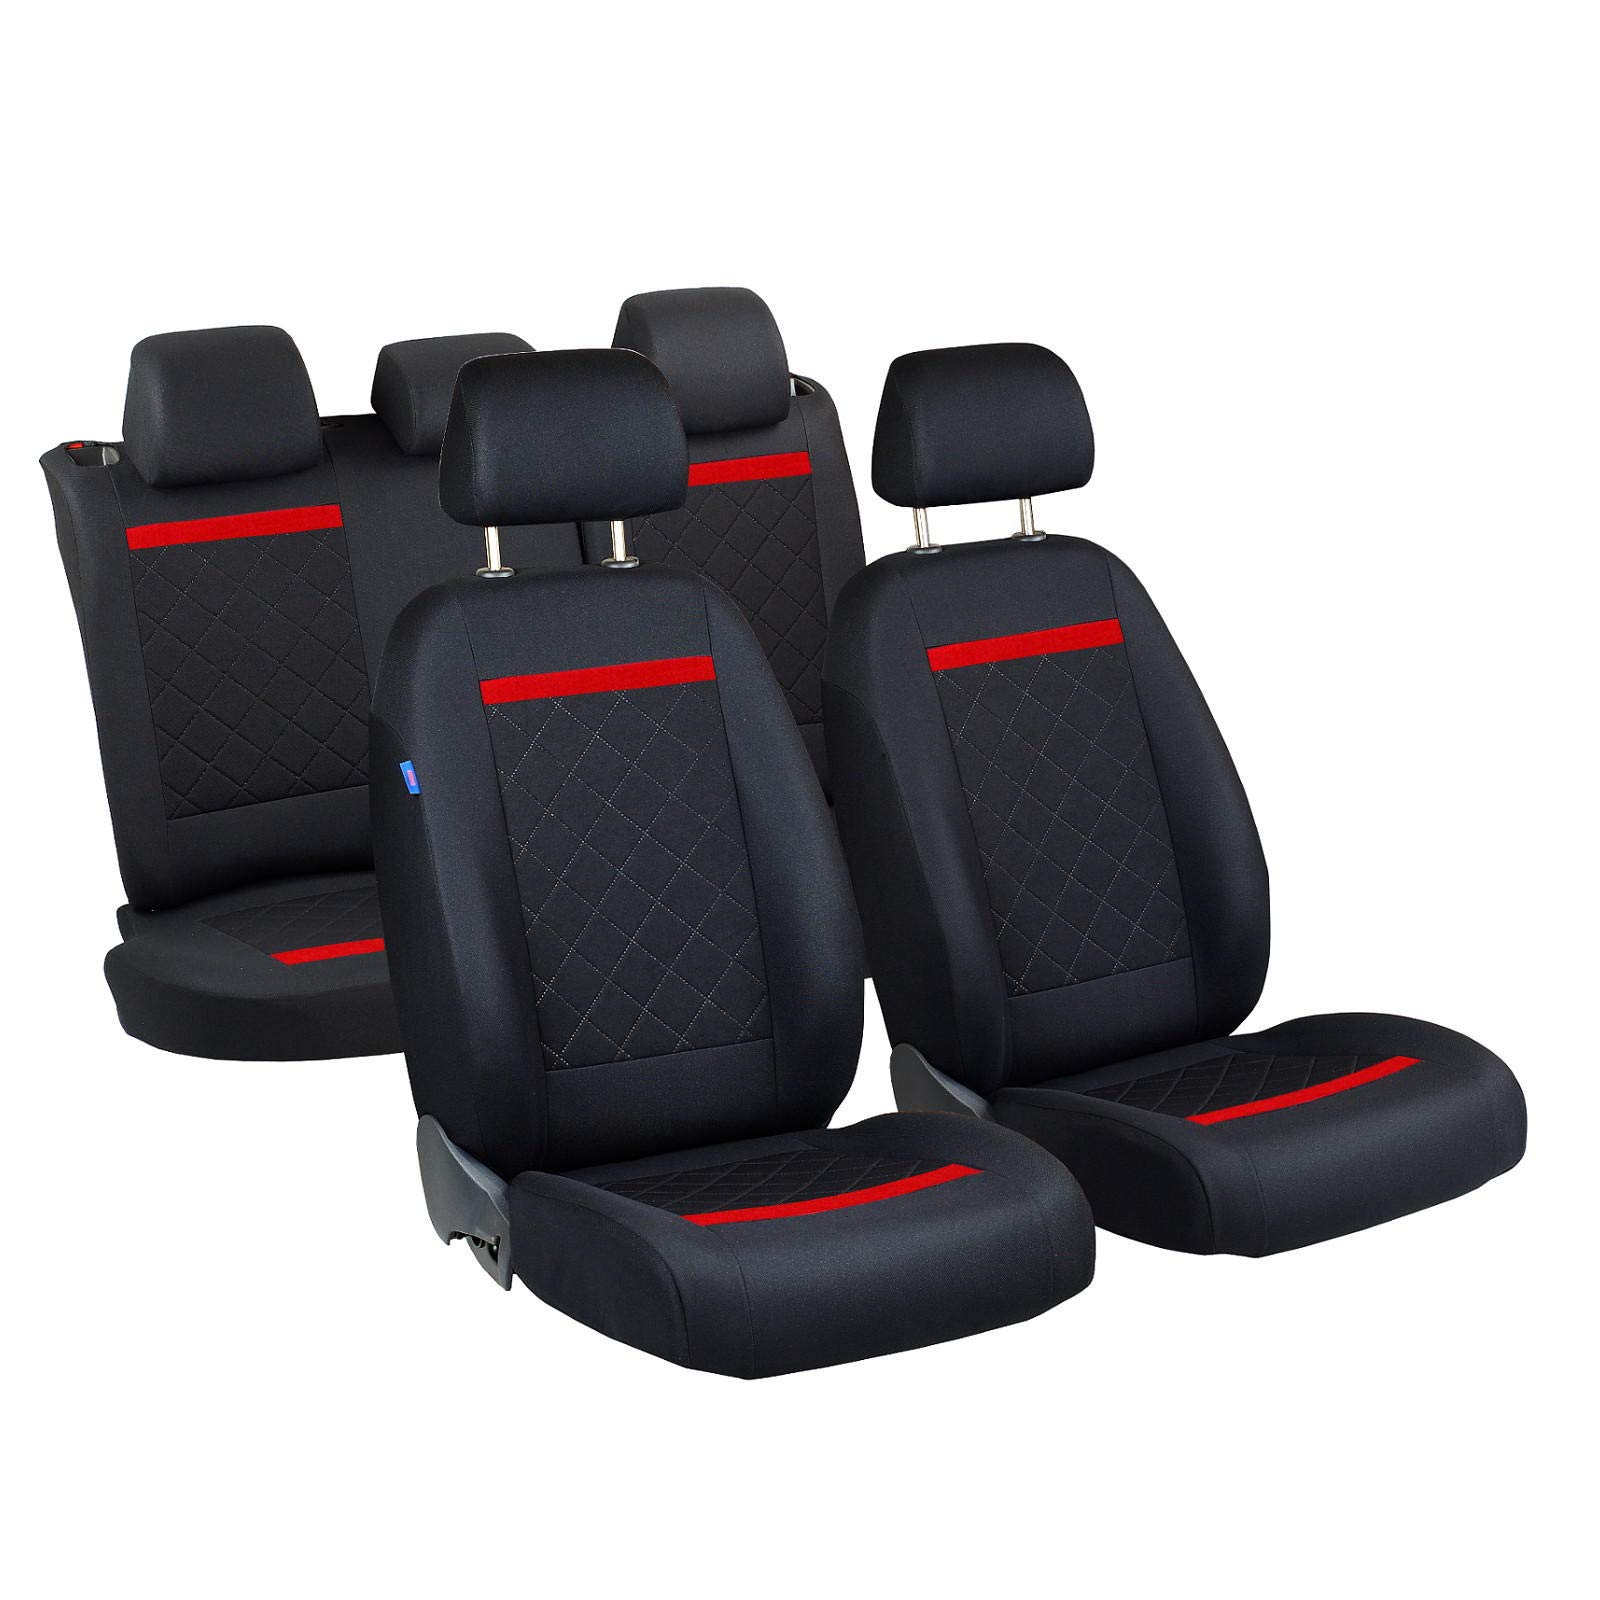 Zakschneider Sitzbezüge für Duster – 1 Set - Farbe Premium Schwarz Gepresstes Karomuster mit Roten Strich von Zakschneider